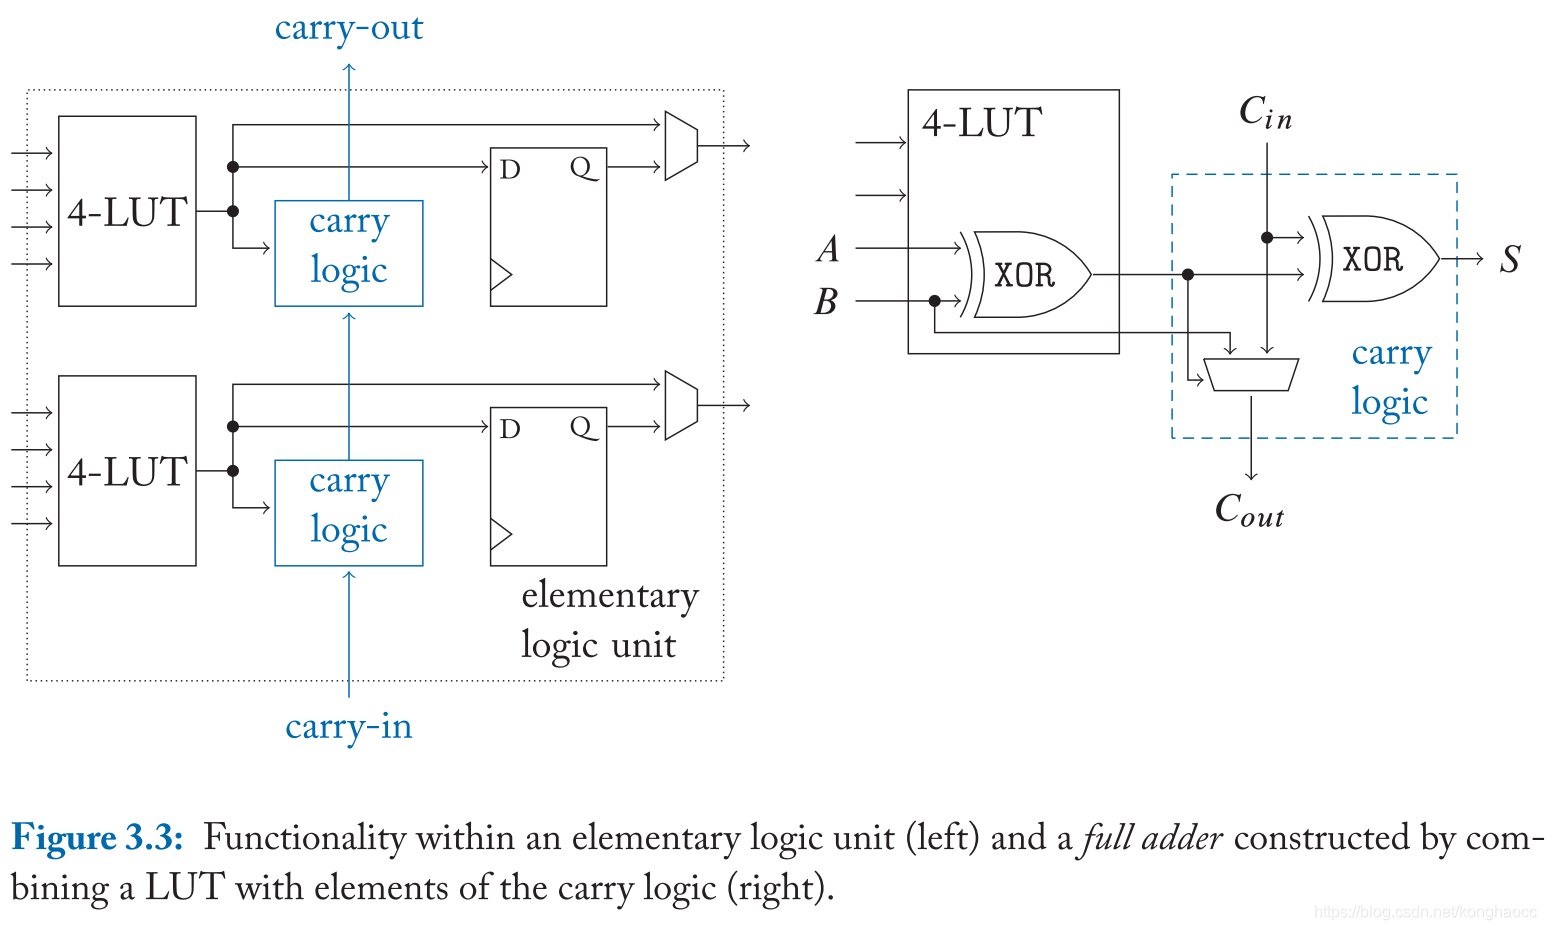 Elementaty logic unit